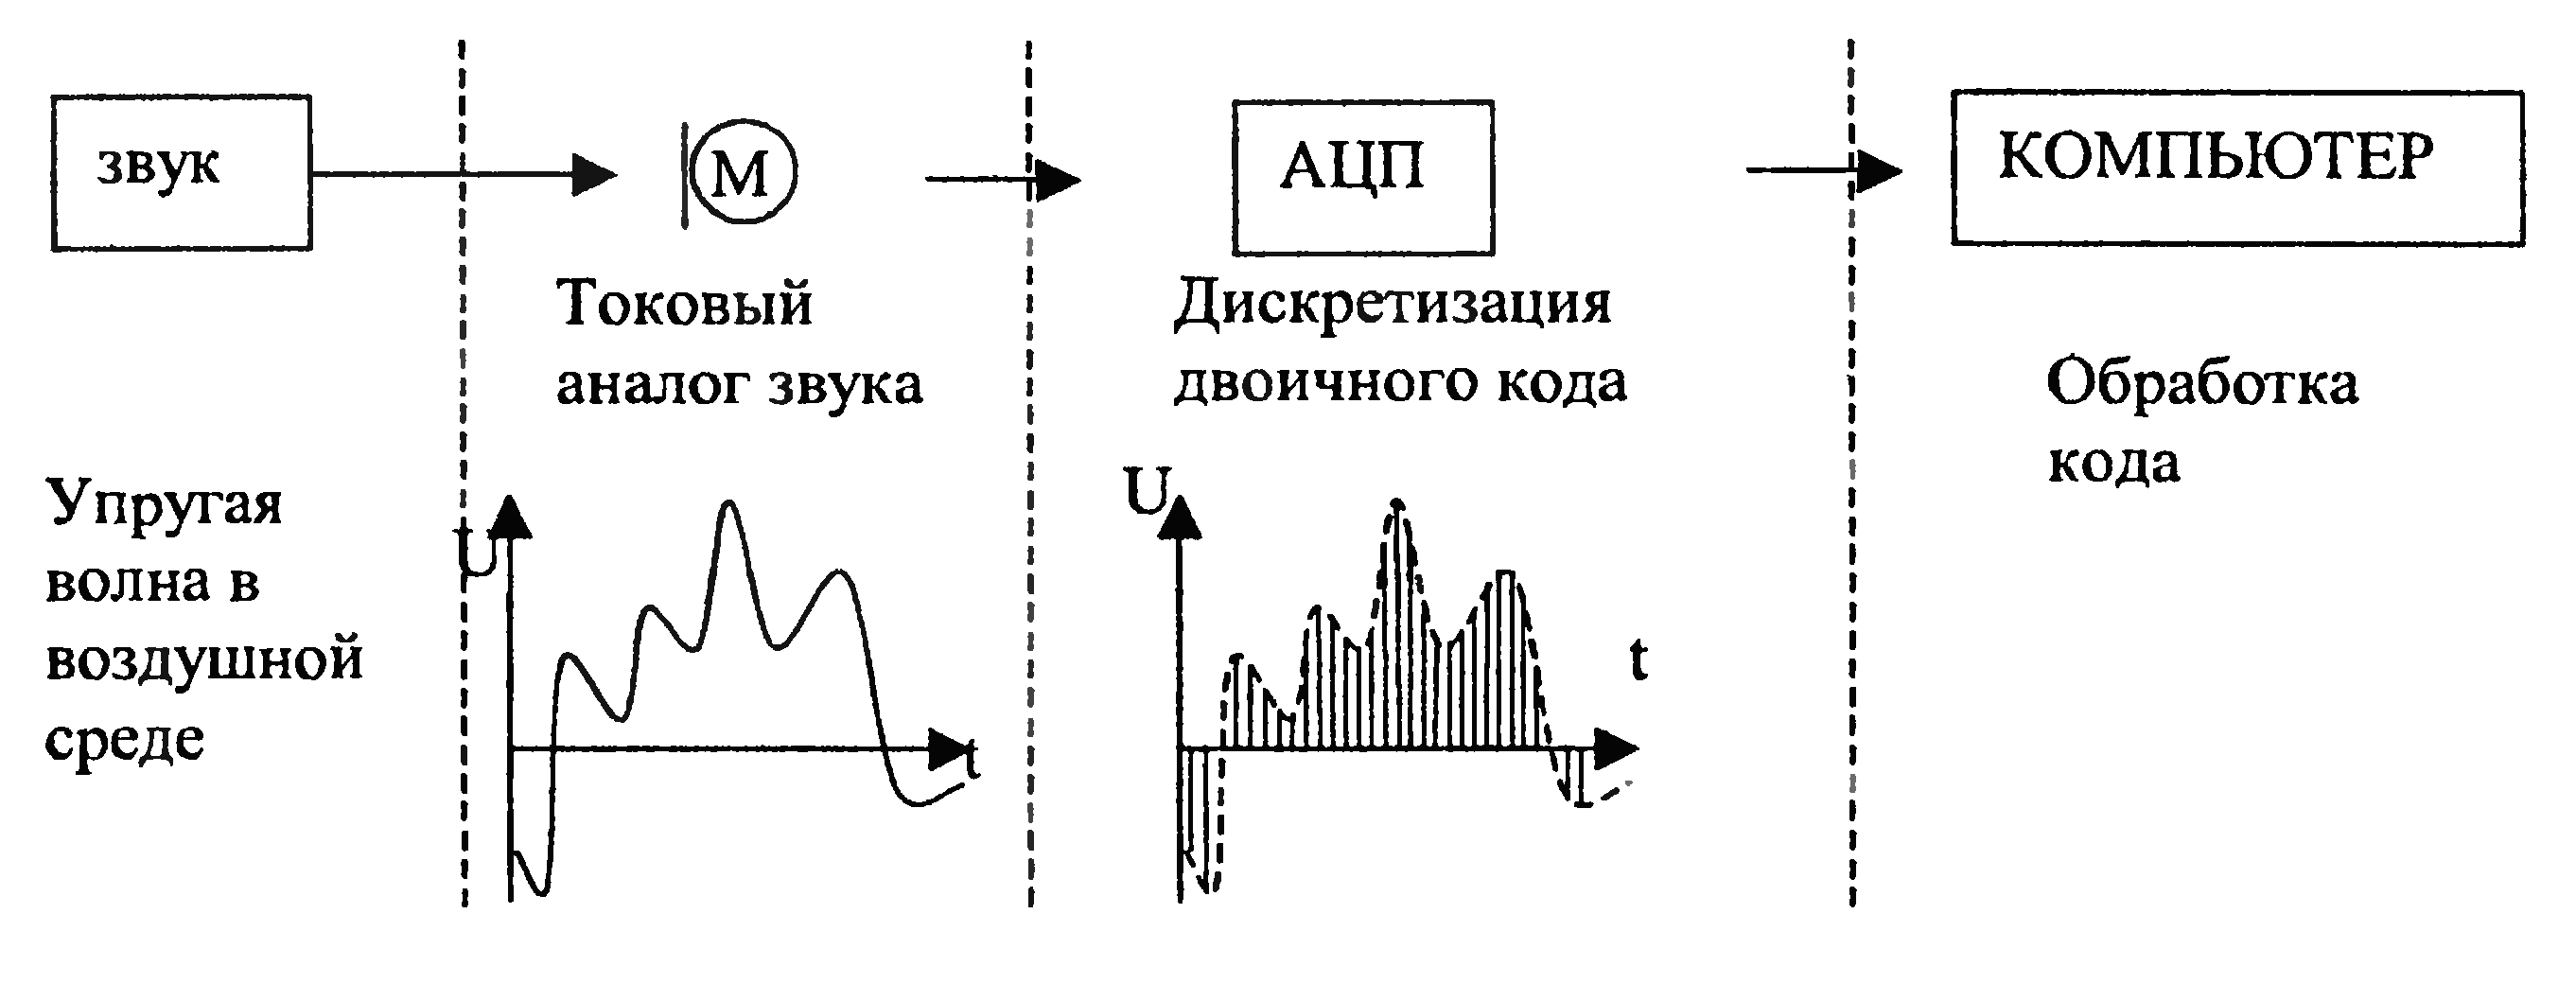 Обработка аналоговой информации. Схема частотной обработки аналоговых сигналов. Кодирование аналогового звукового сигнала. Обработка звука схемы. Представление аналогового сигнала и дискретного схема.